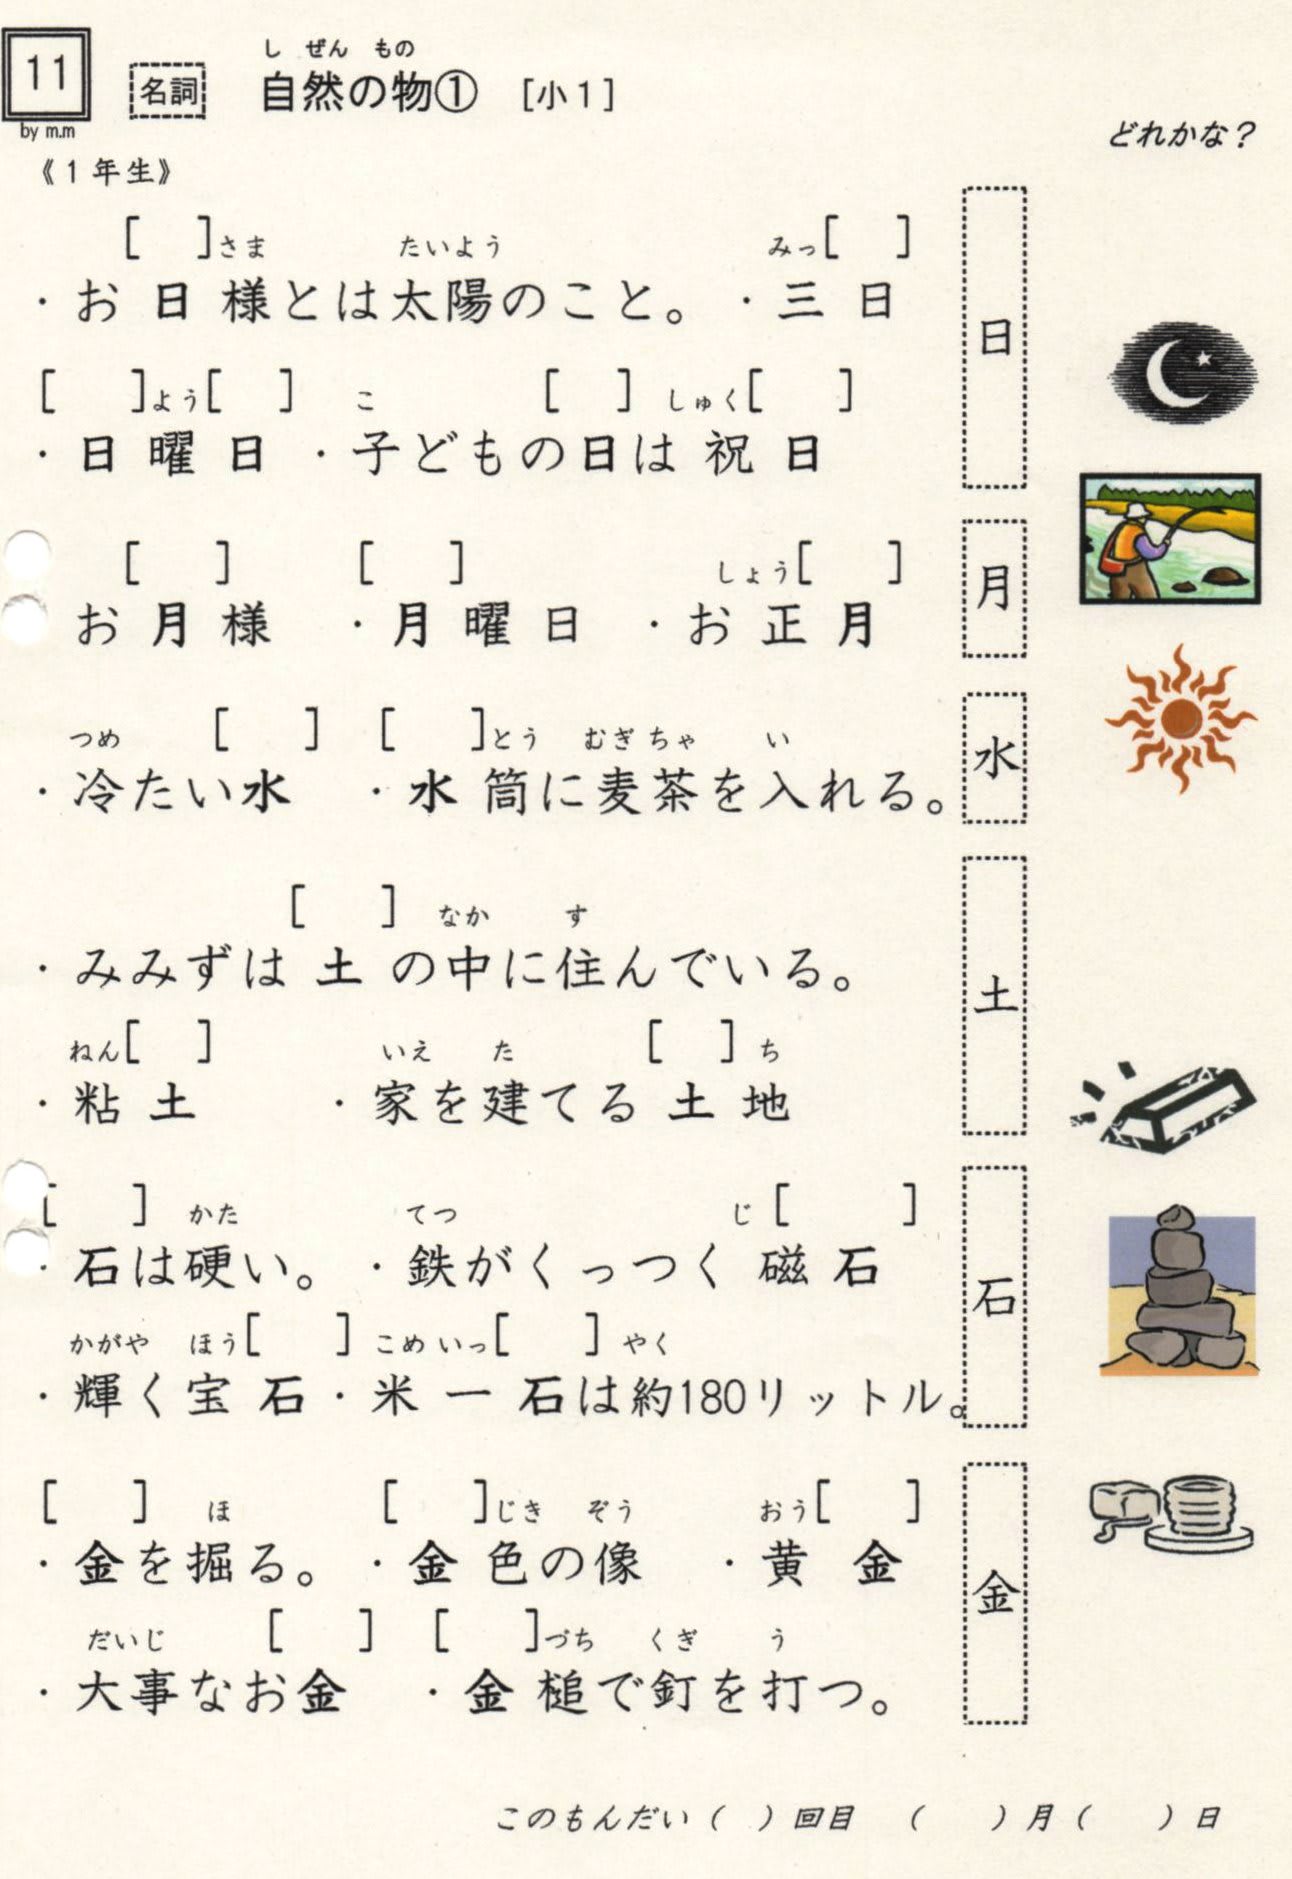 小学校漢字の読み 11 自然の物 1年 石 も 金 も読み方はそれぞれ５つずつ やおよろずの神々の棲む国で